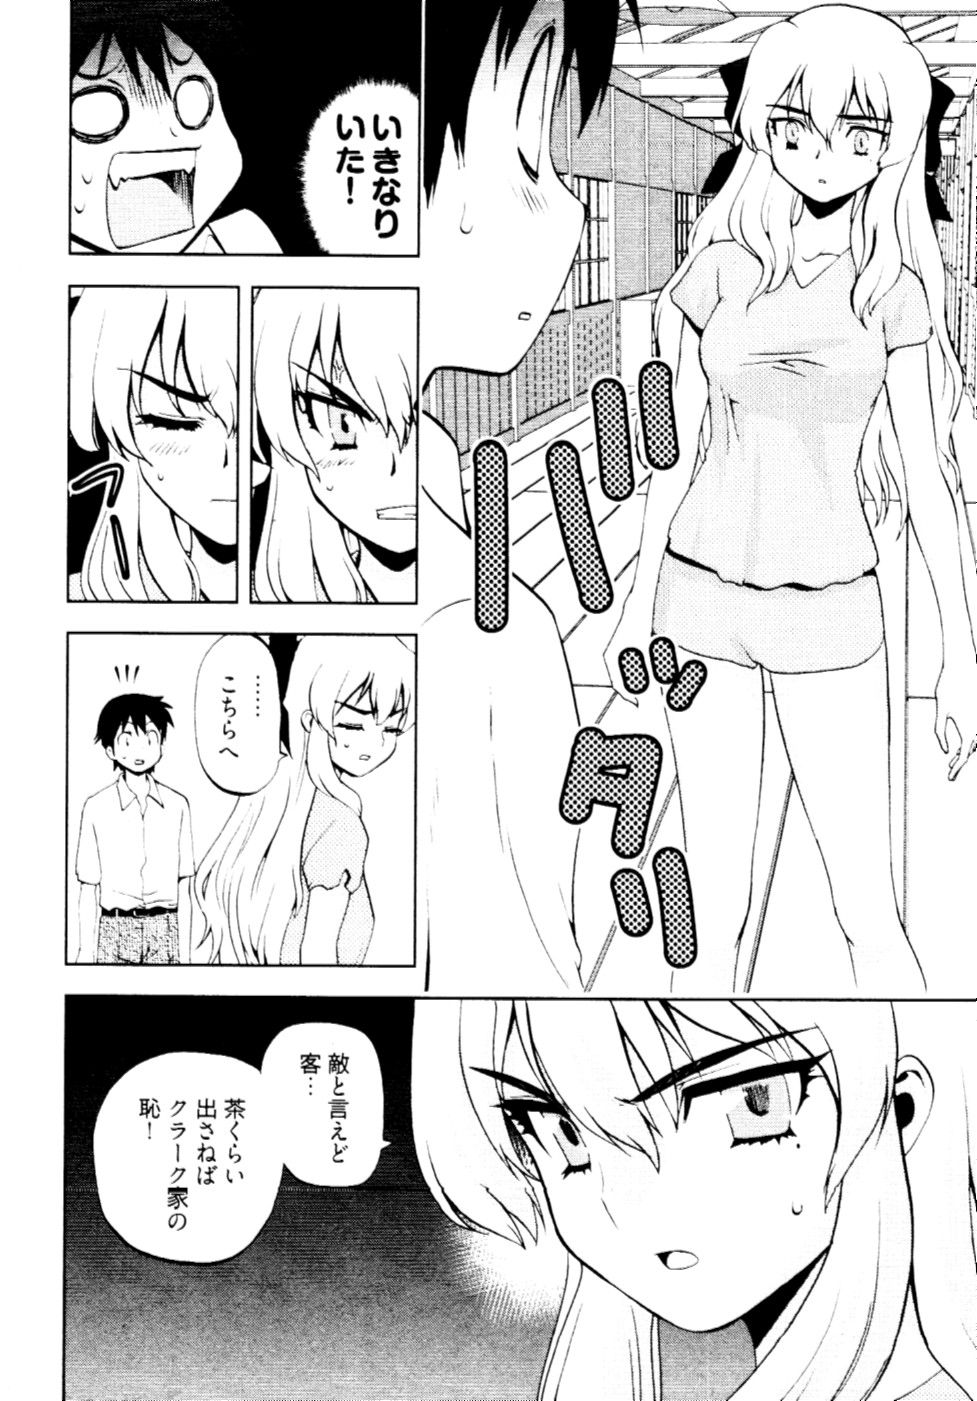 [Togami Shin] Tonosama no Nanahon yari Vol.2 page 17 full